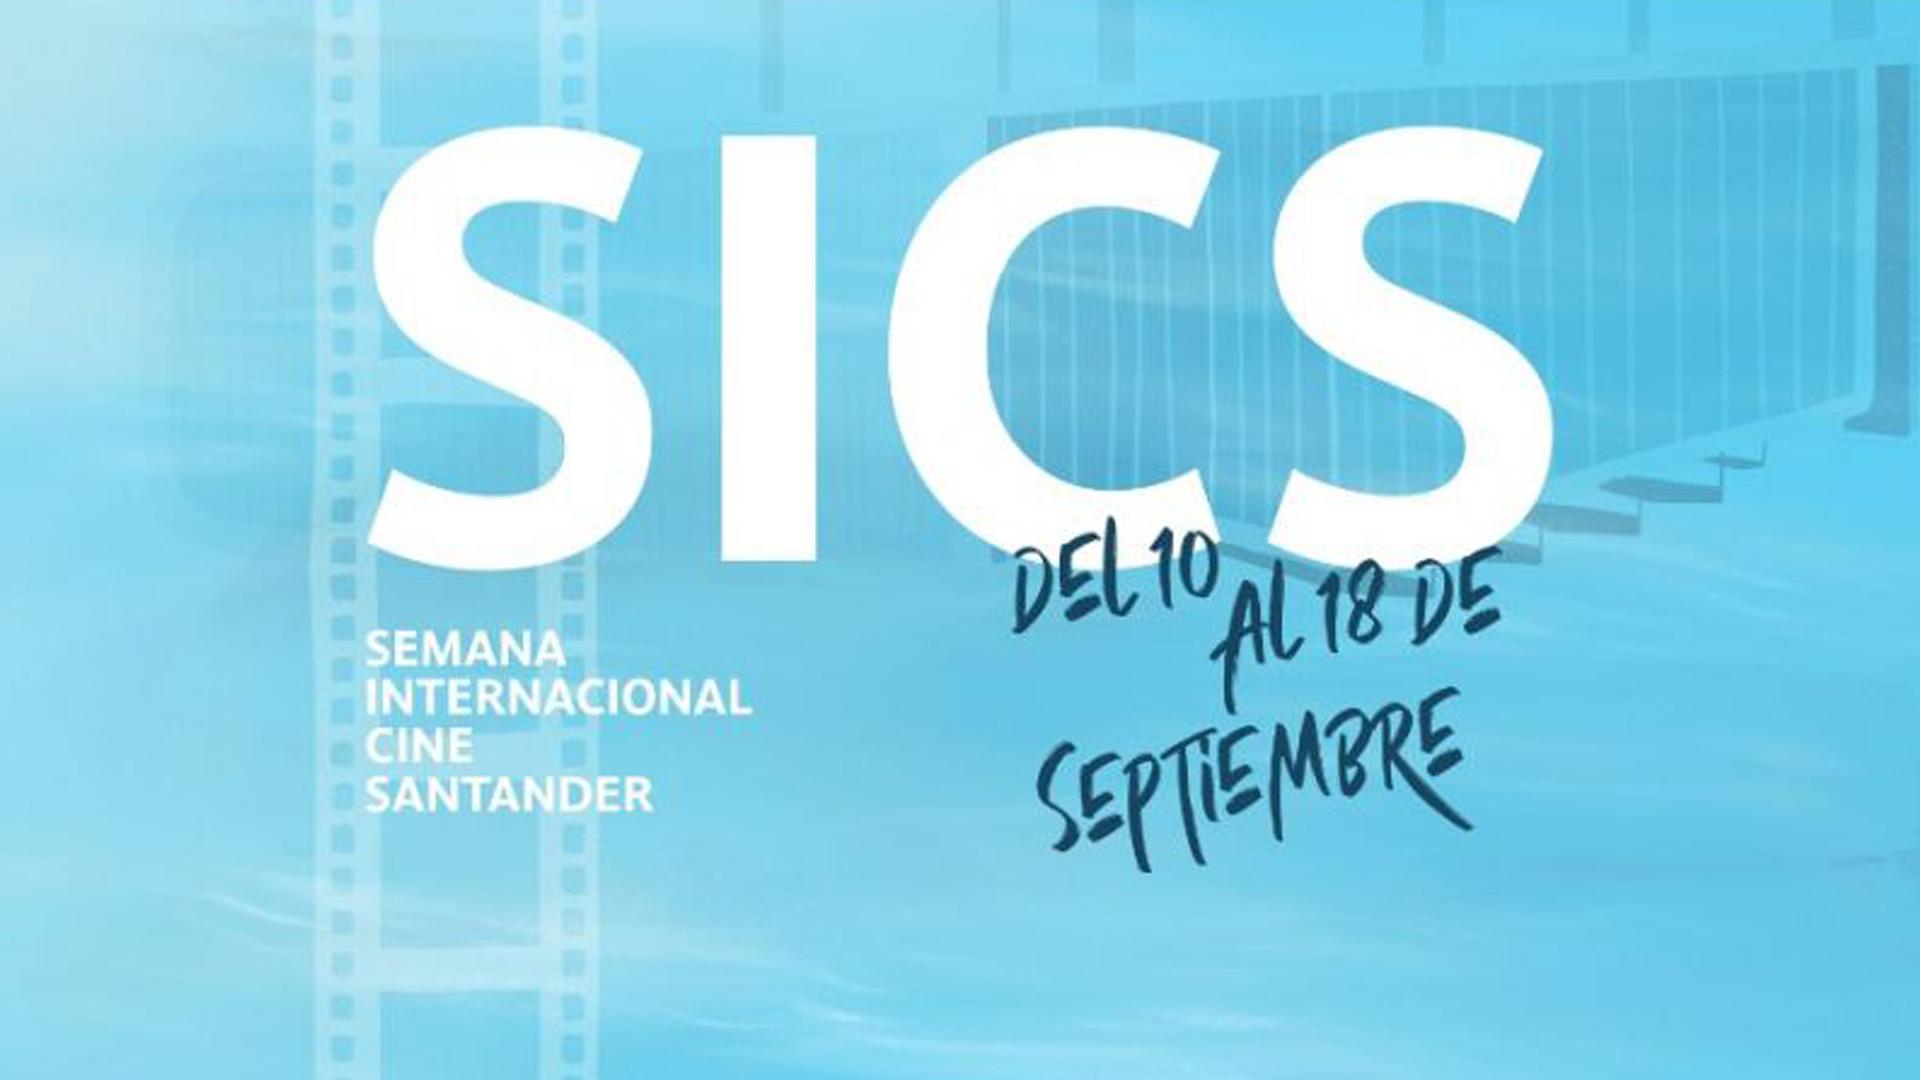 Semana Internacional de Cine de Santander